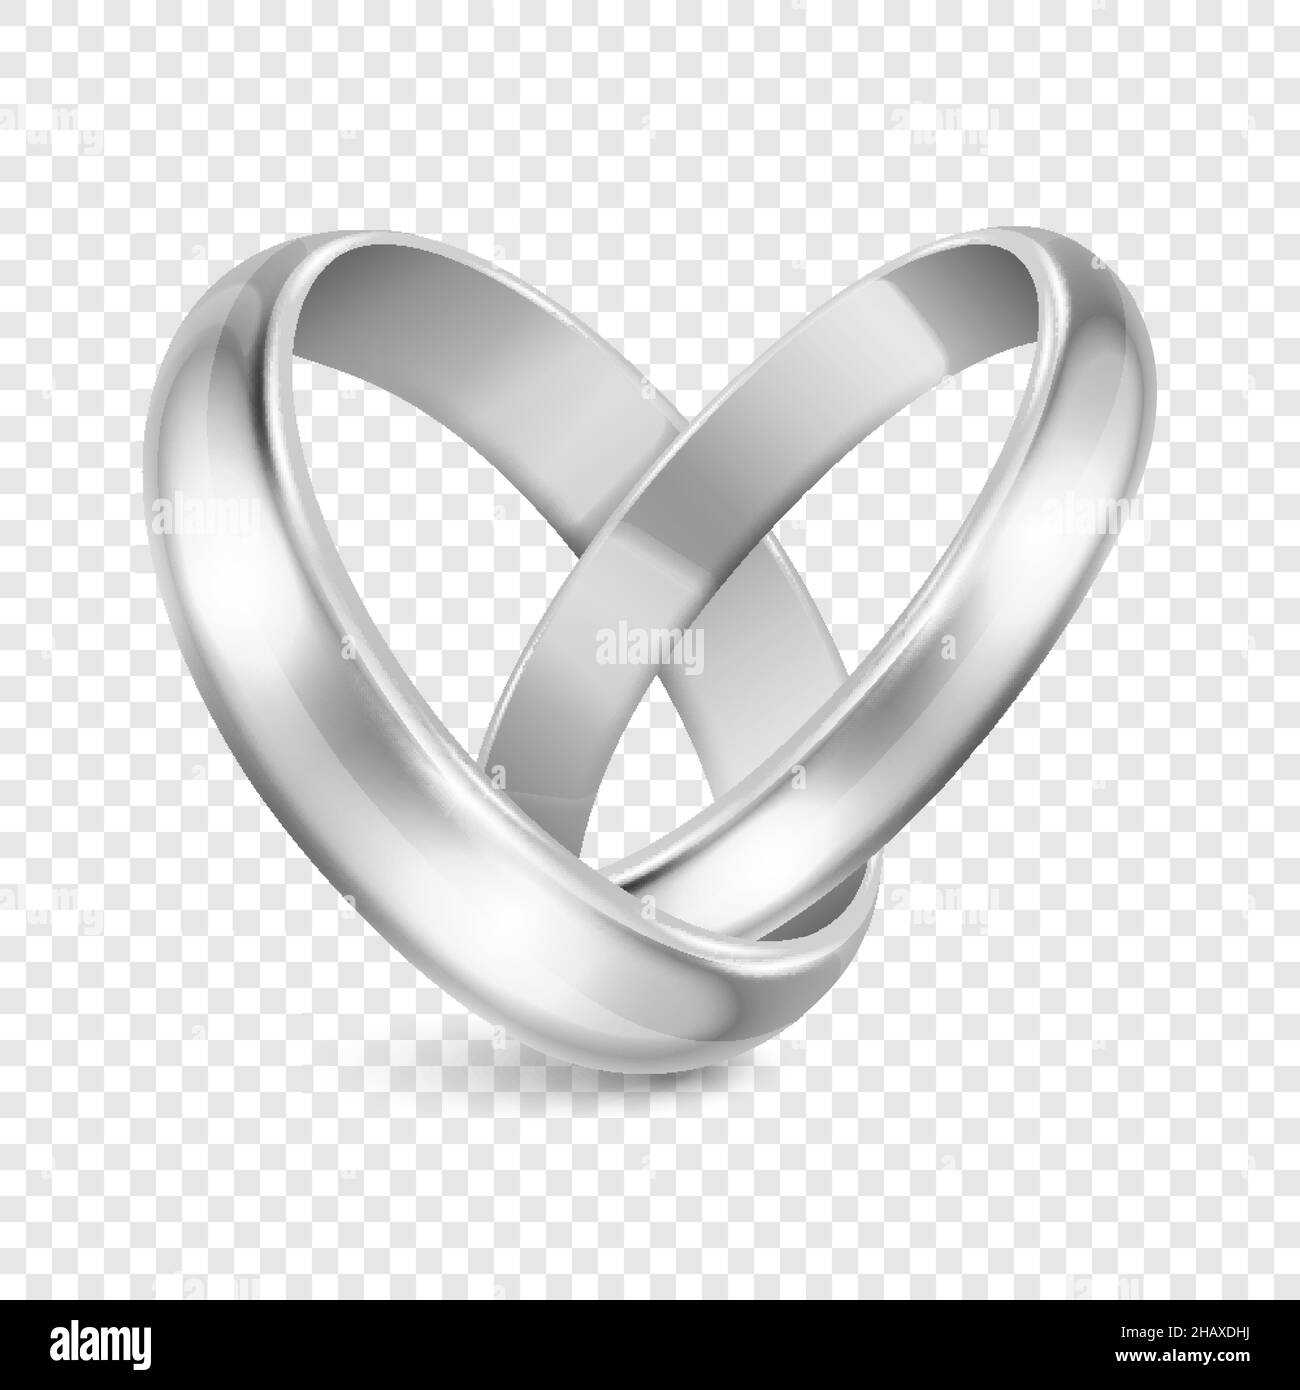 Những chiếc nhẫn cưới bằng kim loại bạc 3D mang đến cảm giác sống động và chân thực. Với đường nét tinh xảo và chất liệu kim loại chắc chắn, những chiếc nhẫn này sẽ làm tan chảy trái tim của bạn. Hãy cùng ngắm nhìn những chi tiết tuyệt đẹp trên chiếc nhẫn.